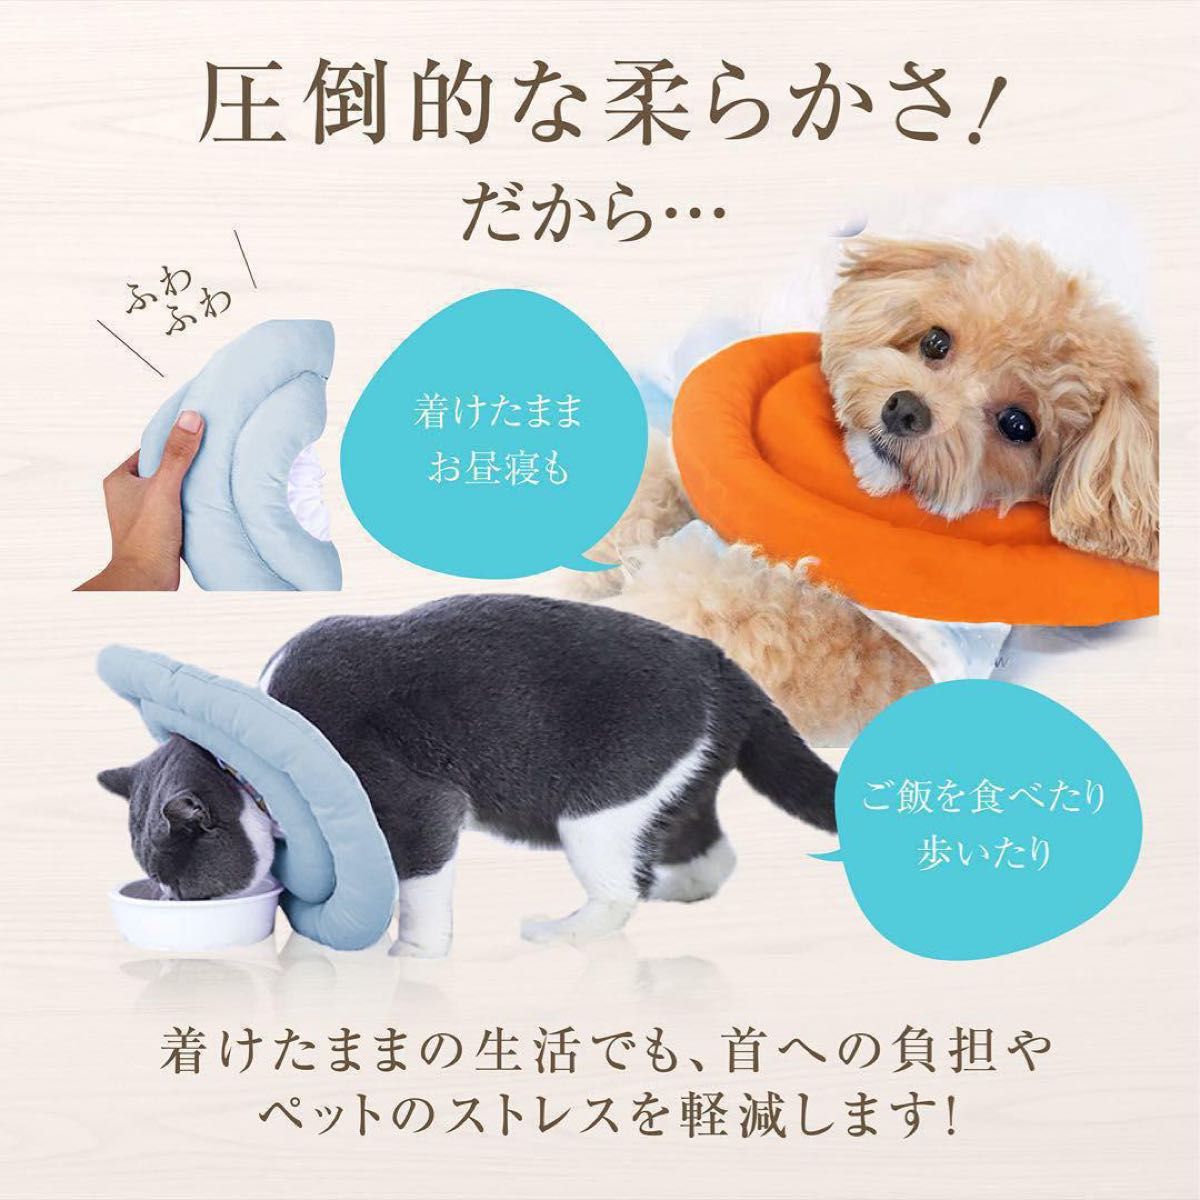 エリザベスカラー 子猫 子犬 ソフト 引っ掻き防止 オレンジ S サイズ 調整可能 軽量 柔らかい 防水 術後 傷口保護